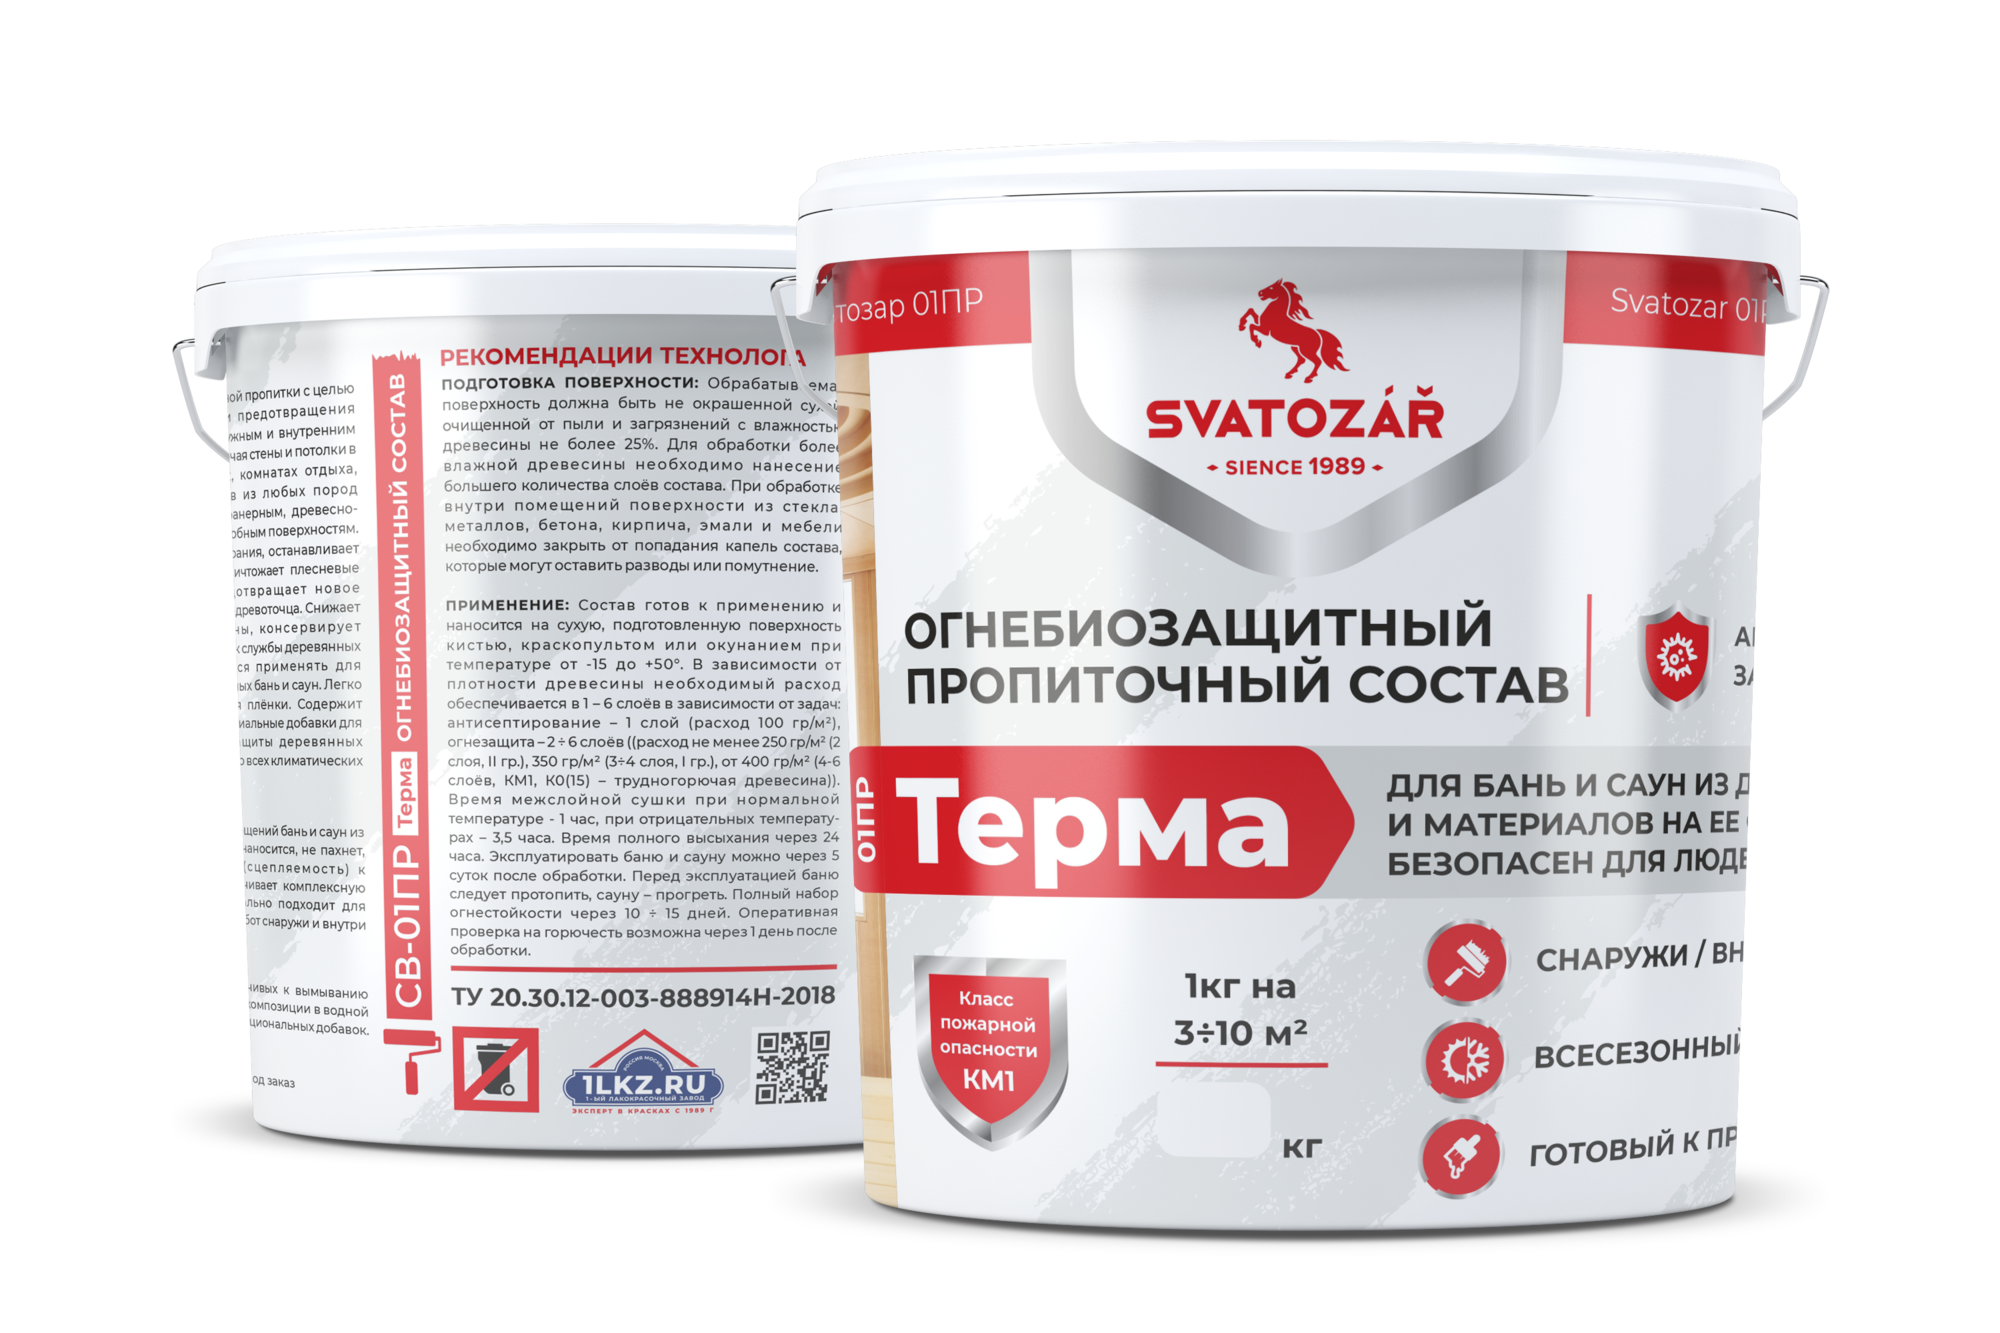 Огнебиозащитный пропиточный состав для бань и саун Бесцветный, 10 кг Finlux SVATOZAR-Святозар СВ- 01ПР Терма